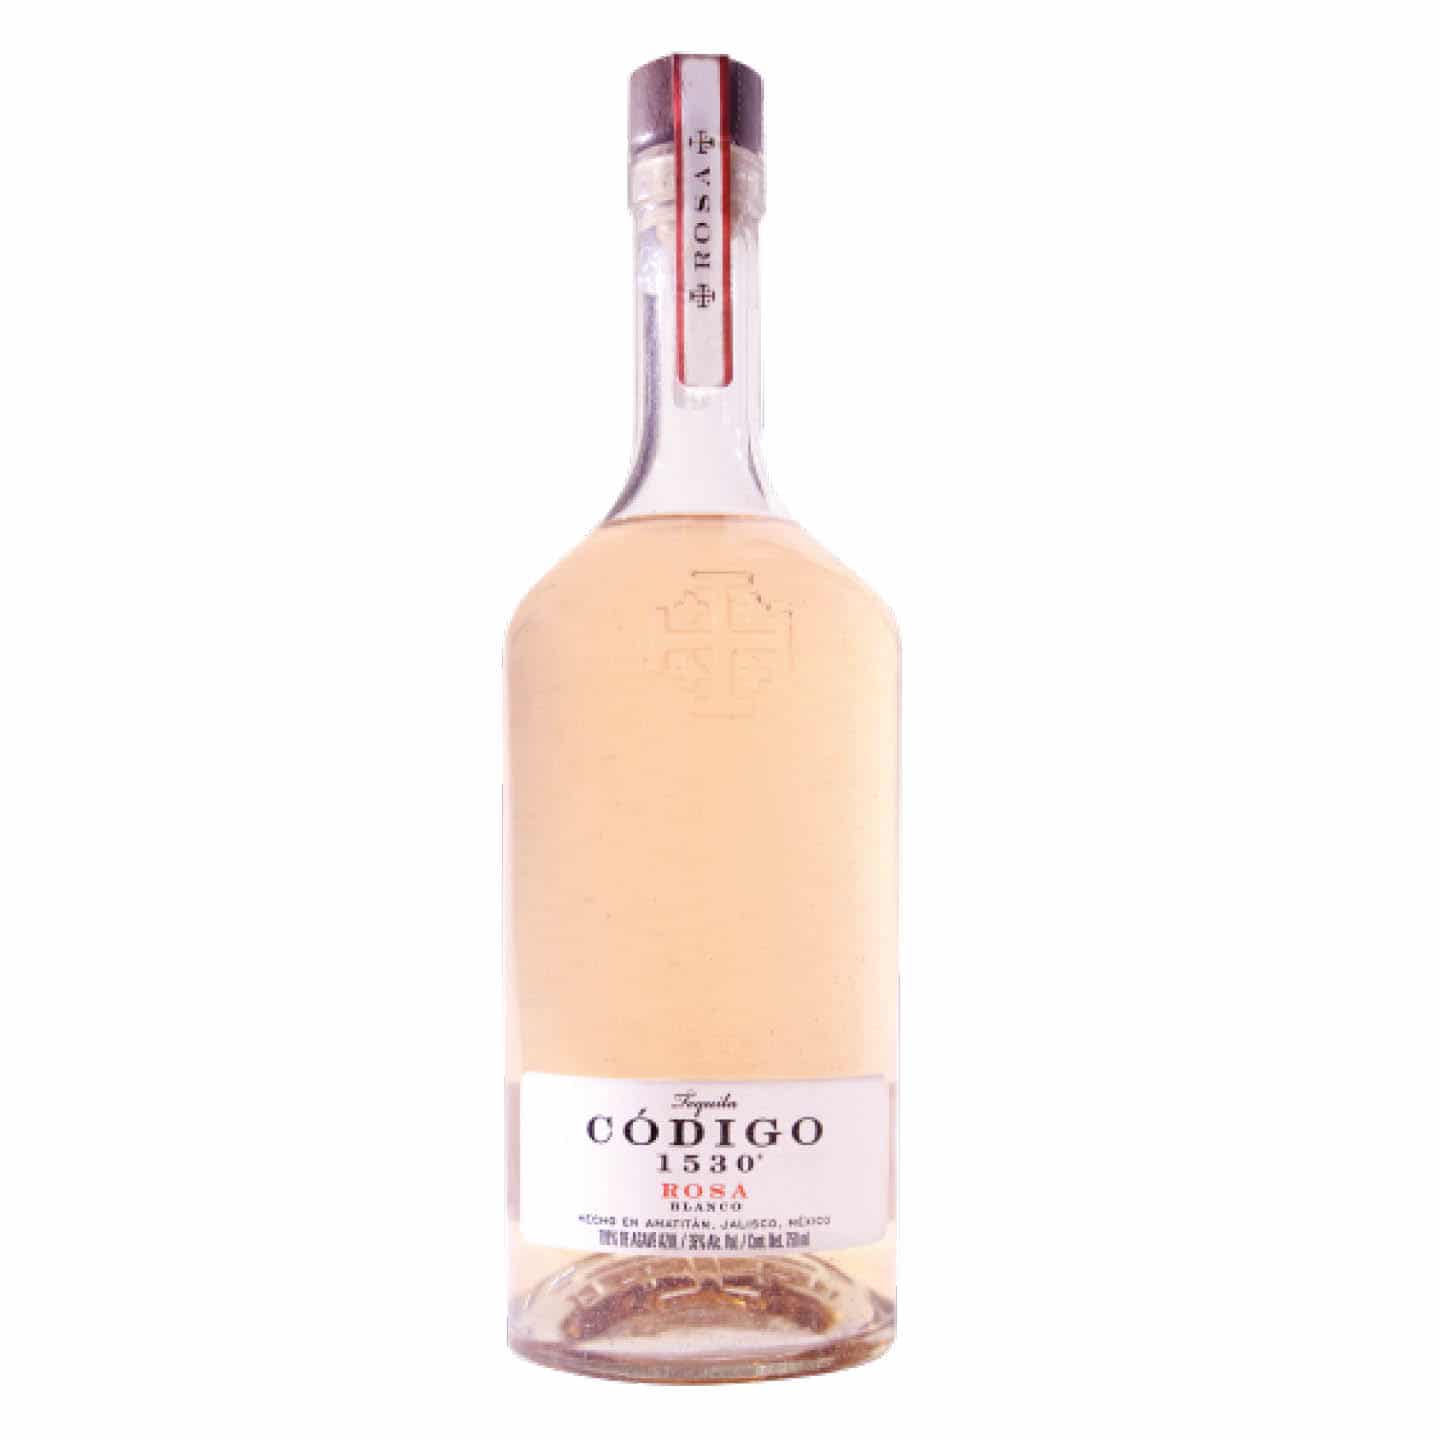 codigo tequila rosé pour les cocktails